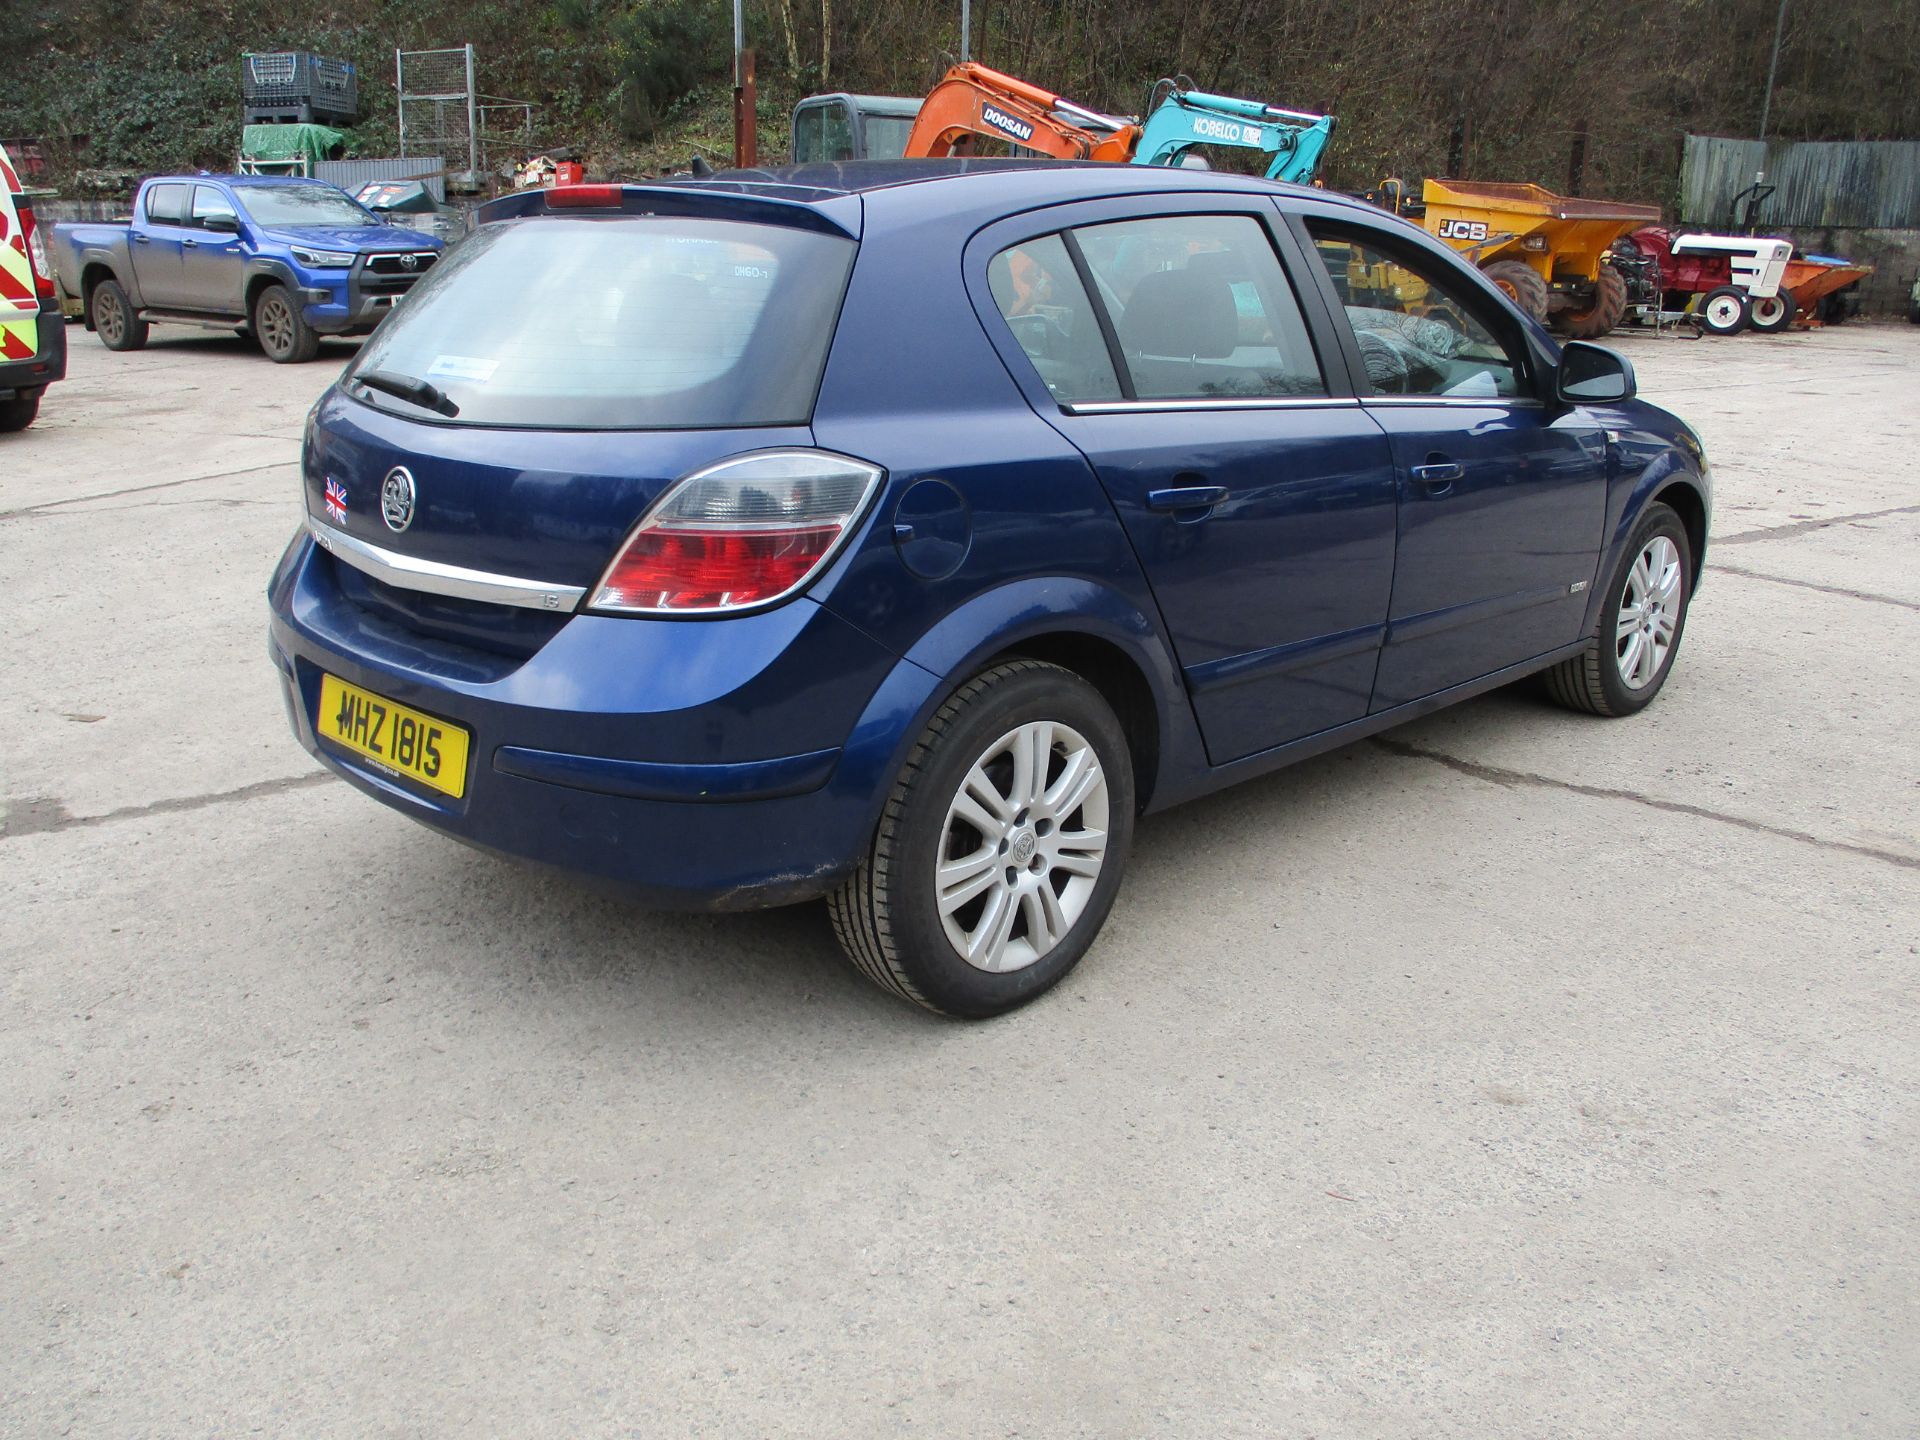 2009 VAUXHALL ASTRA DESIGN - 1598cc 5dr Hatchback (Blue, 103k) - Image 5 of 15